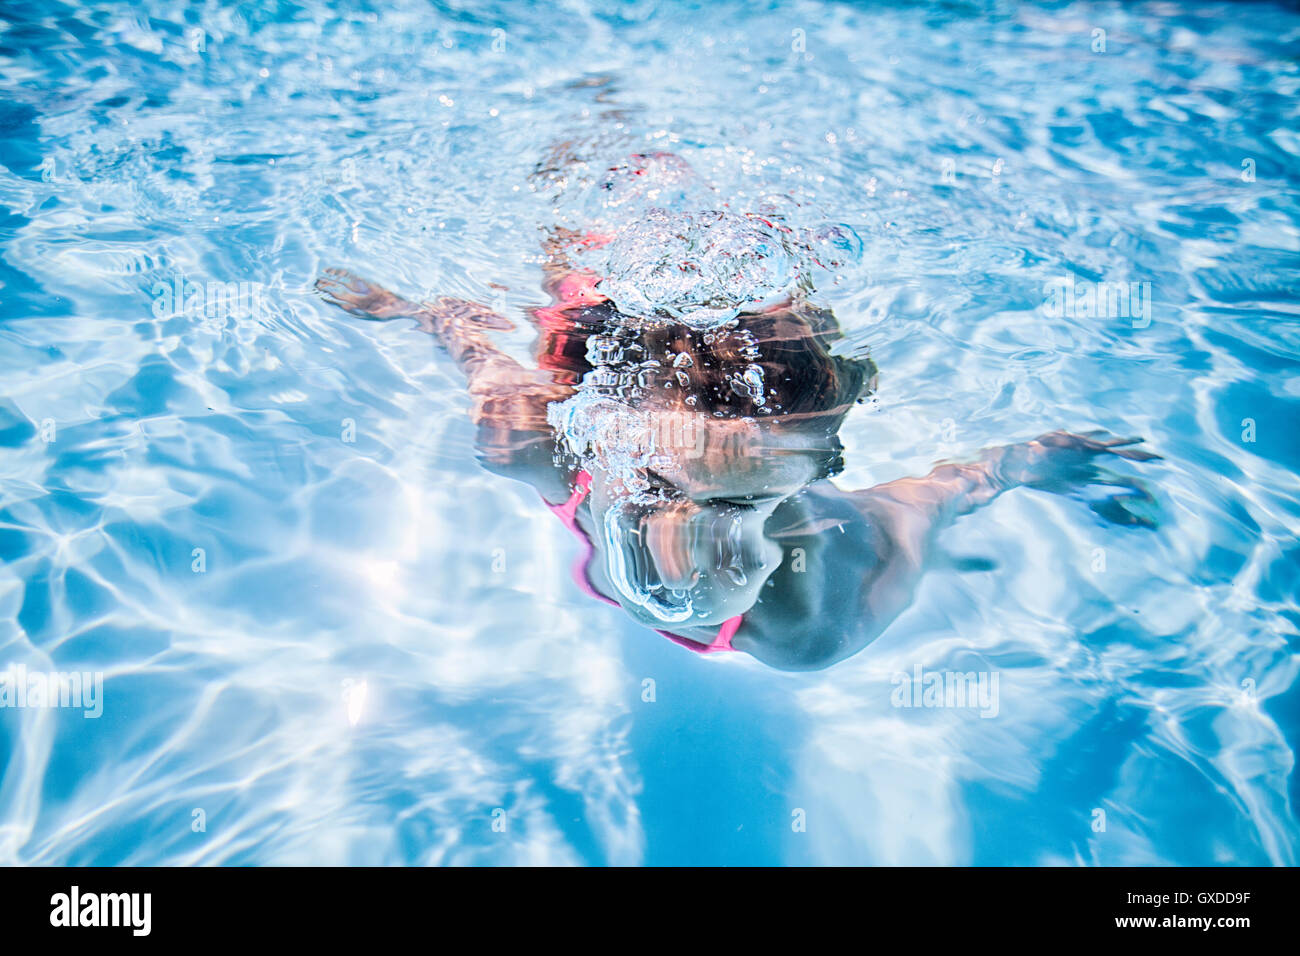 Ragazza di nuoto sott'acqua nel soleggiato piscina Foto Stock